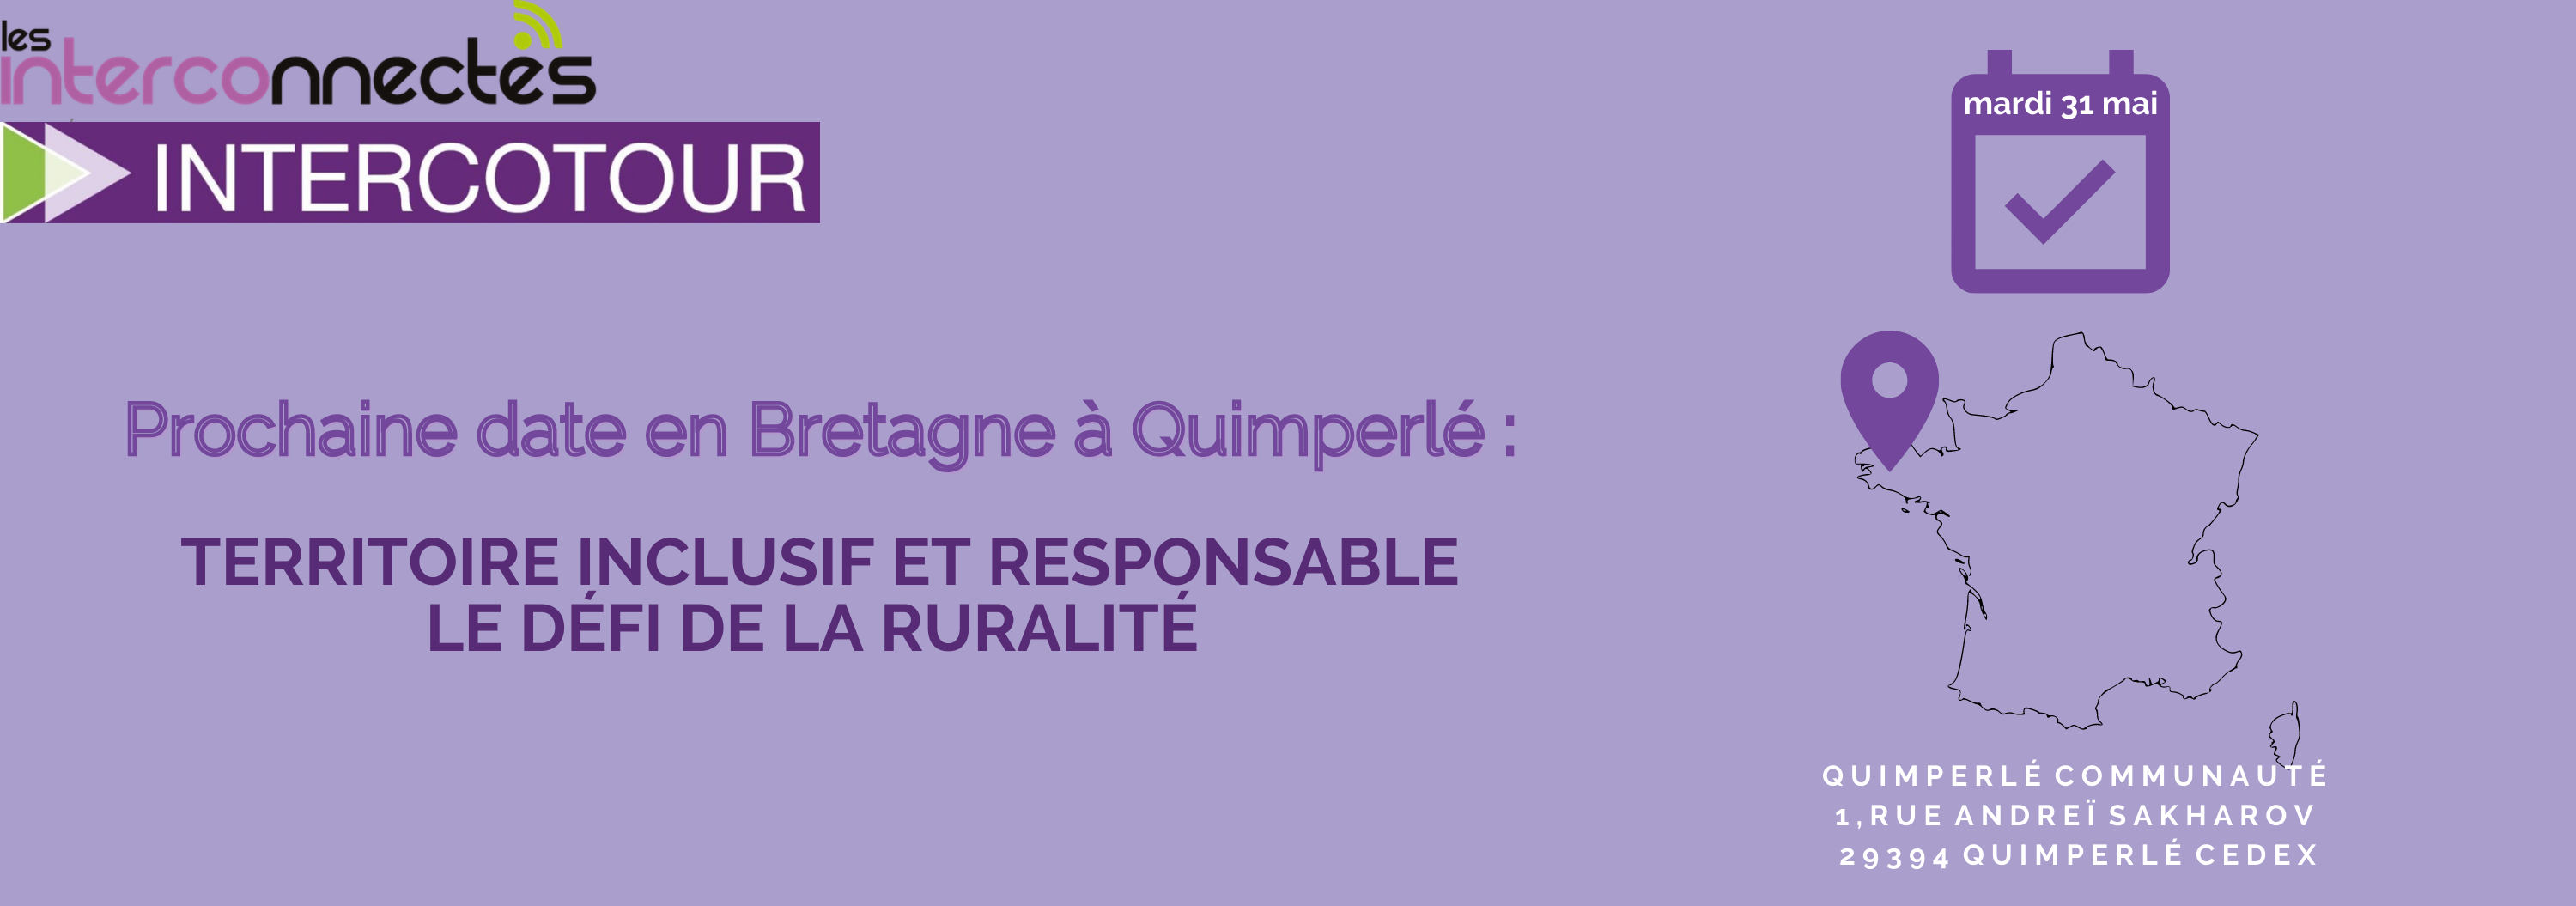 IntercoTour Bretagne le 30 mai : Journée Numérique et Ruralité